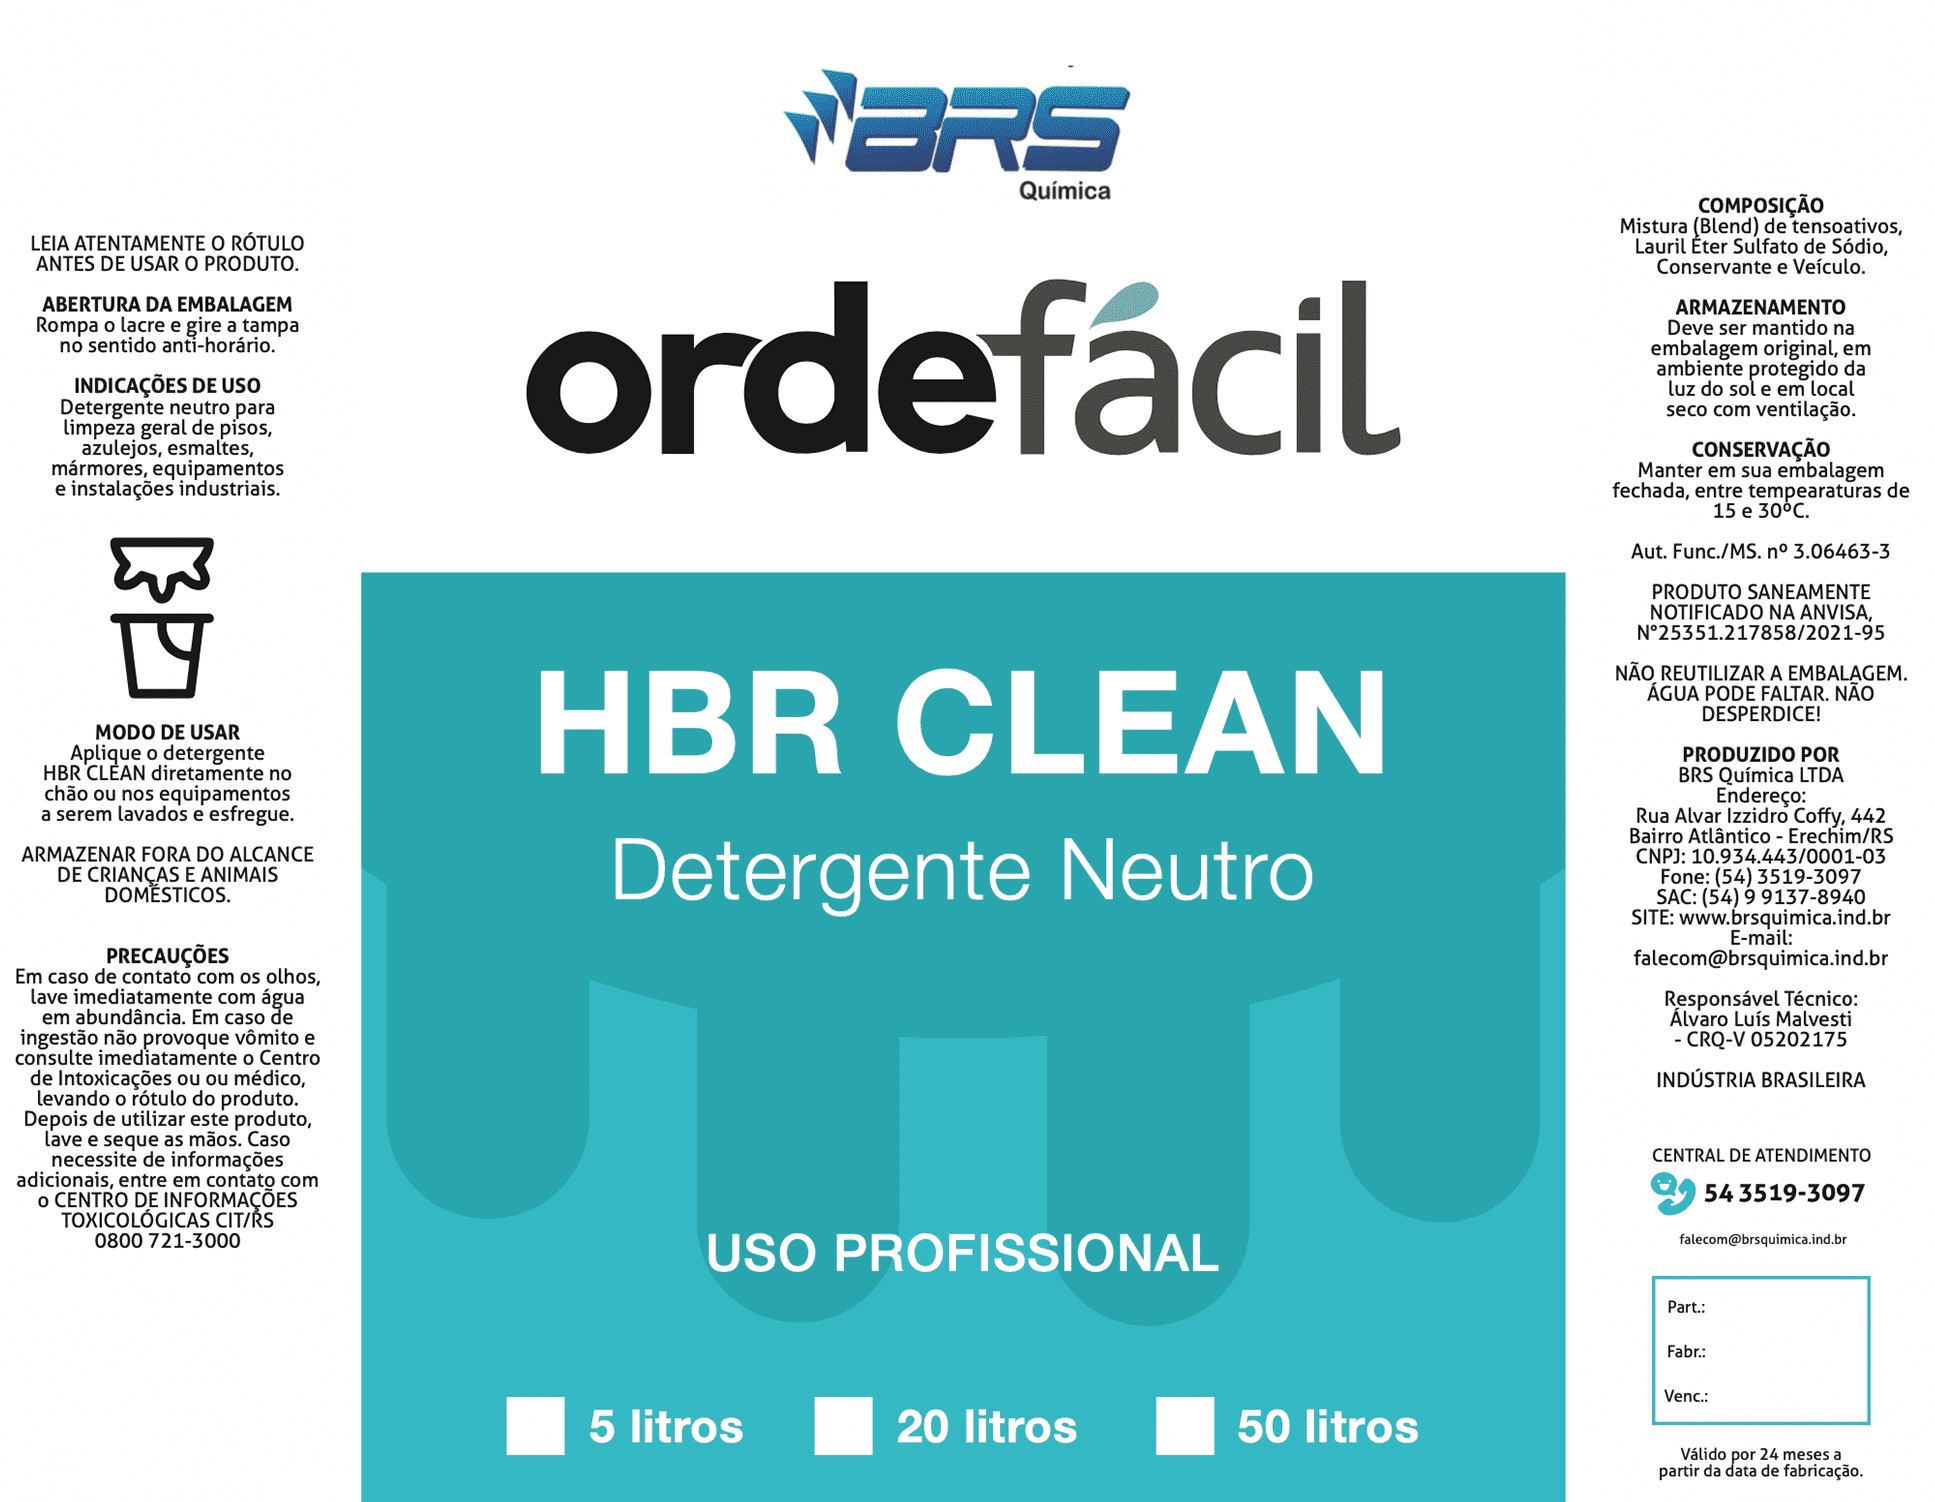 HBR Clean Detergente Neutro